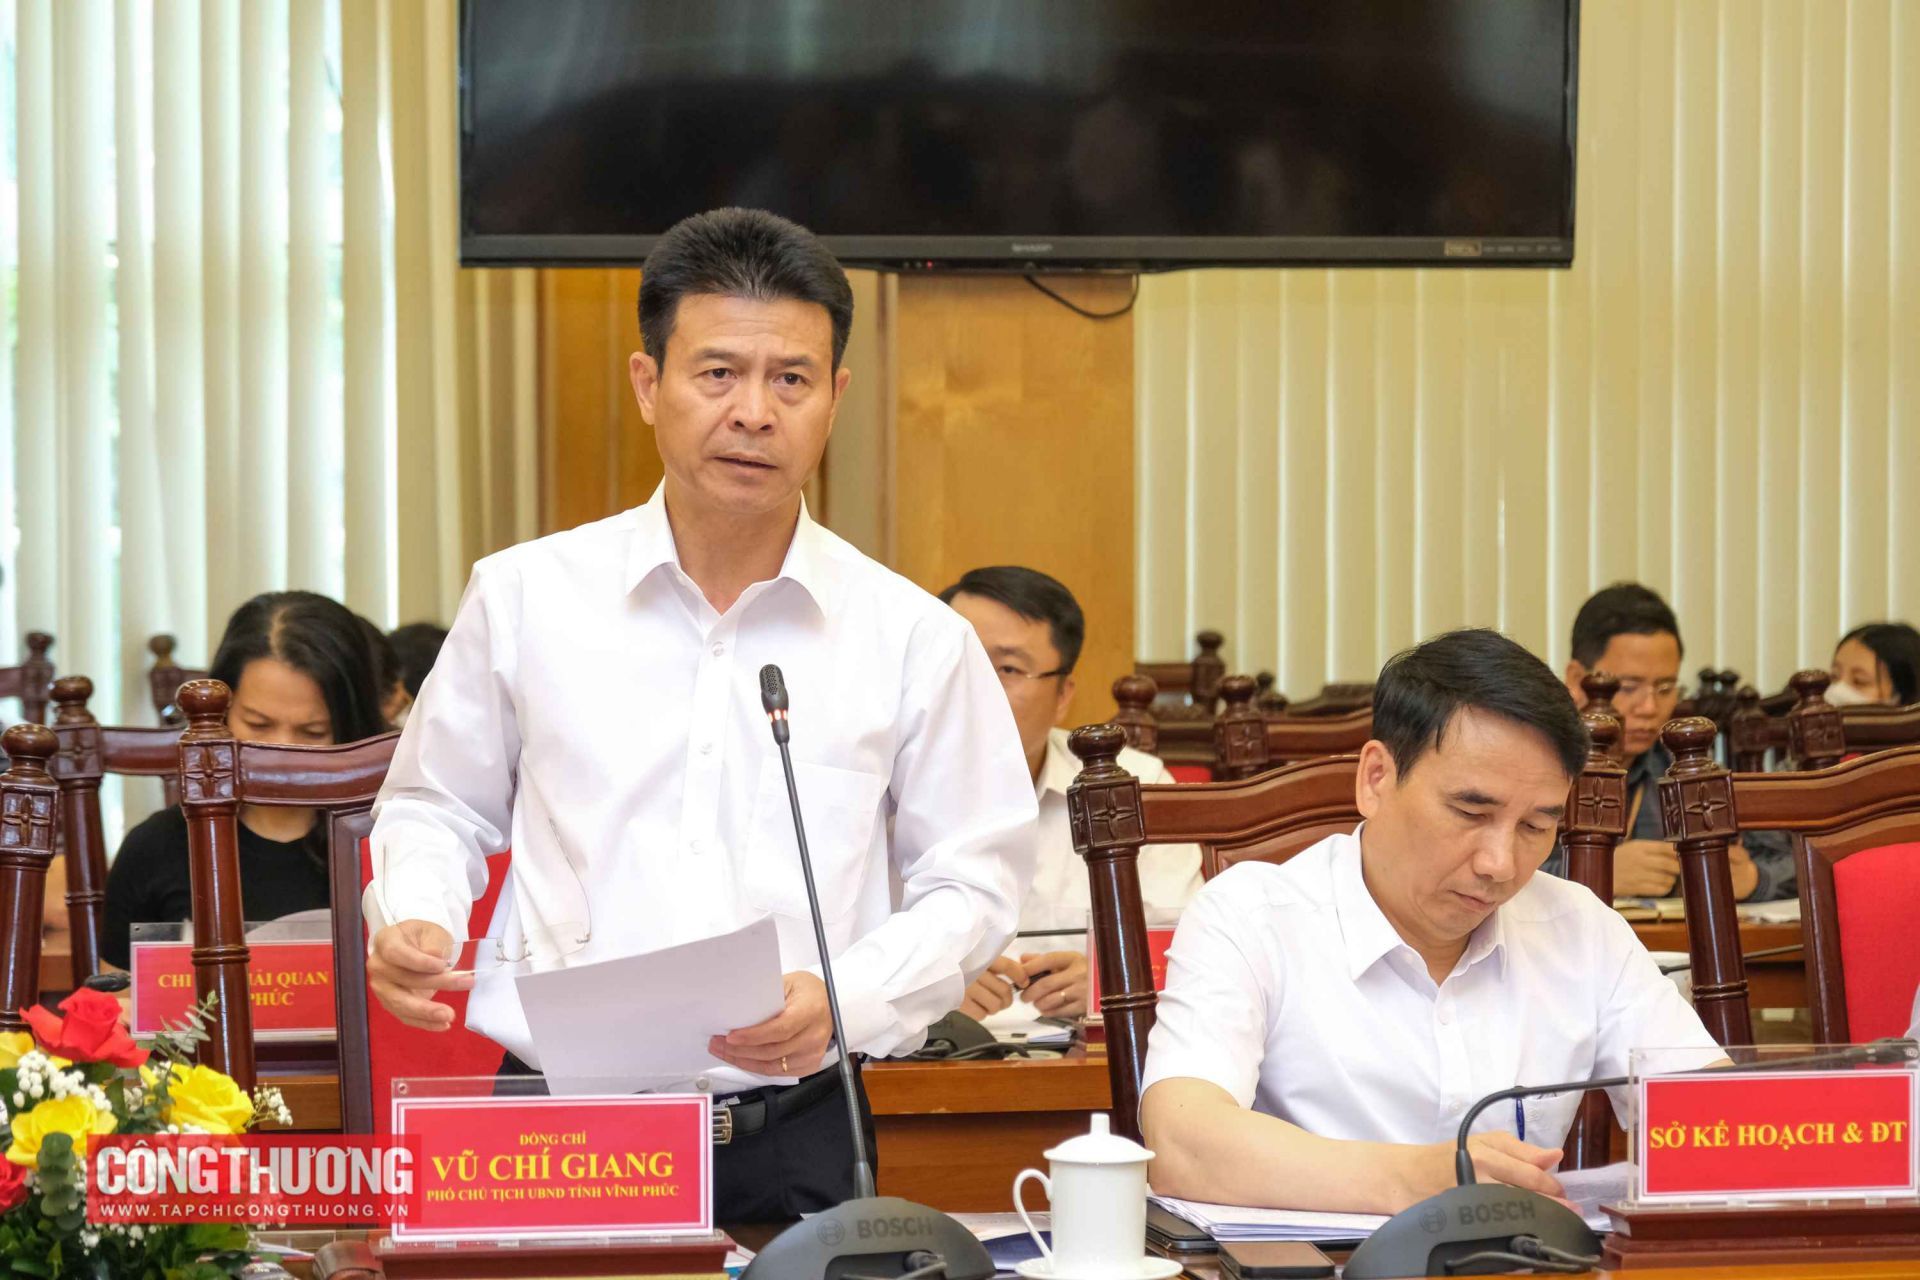 Ông Vũ Chí Giang - Phó Chủ tịch UBND tỉnh Vĩnh Phúc báo cáo về tình hình tăng trưởng, sản xuất, kinh doanh một số ngành, lĩnh vực trên địa bàn tỉnh